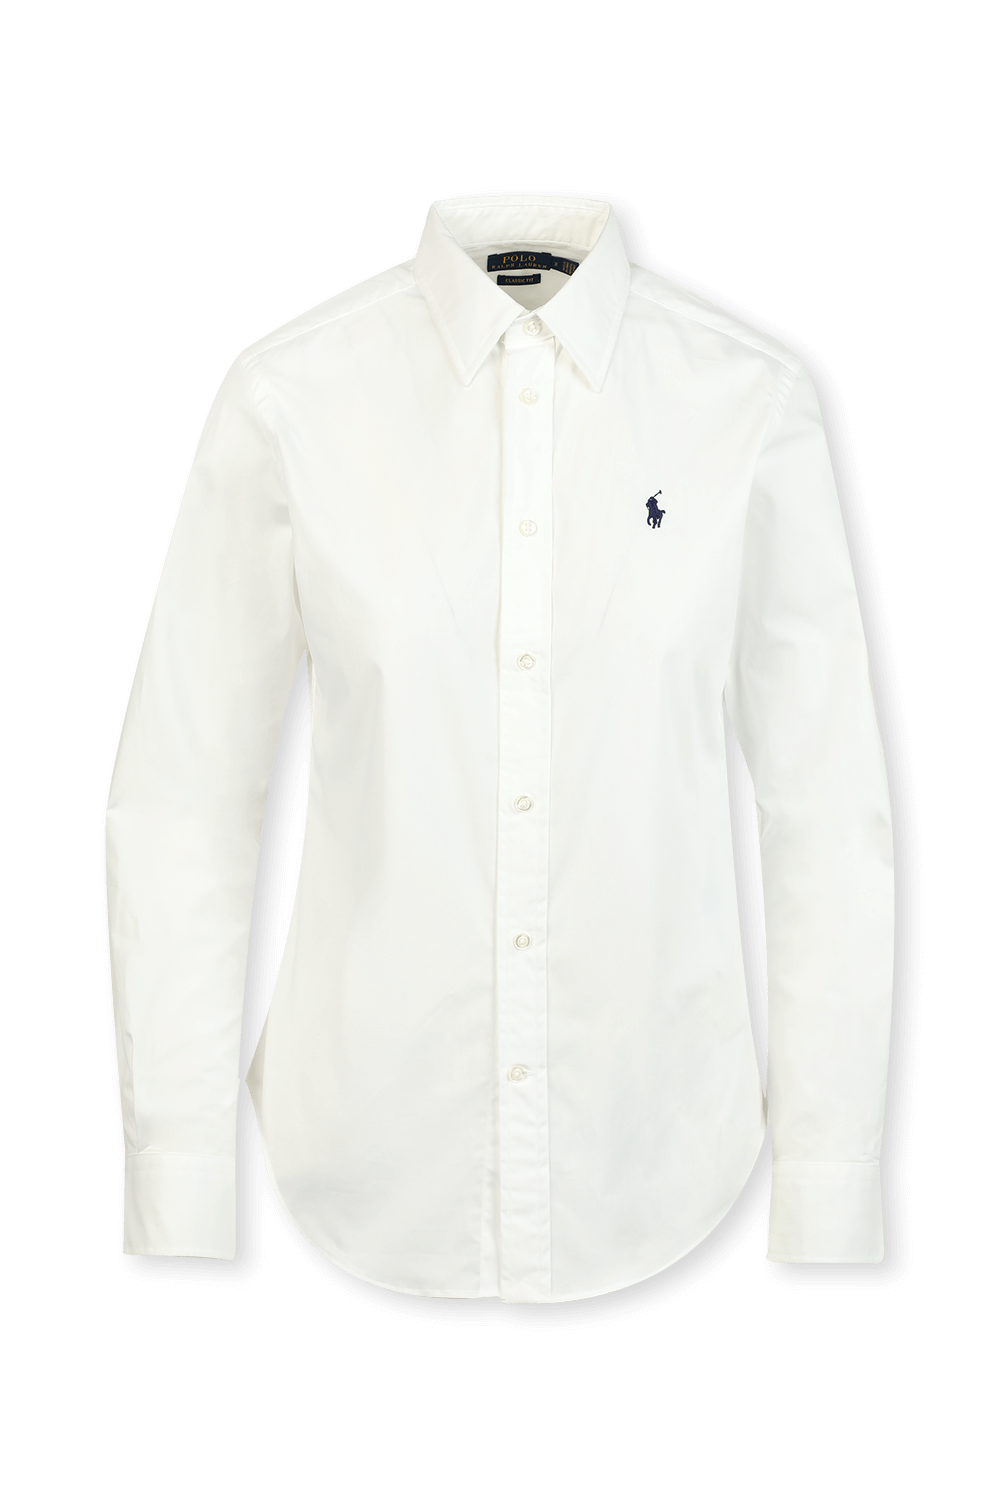 חולצת סלים לבנה POLO RALPH LAUREN